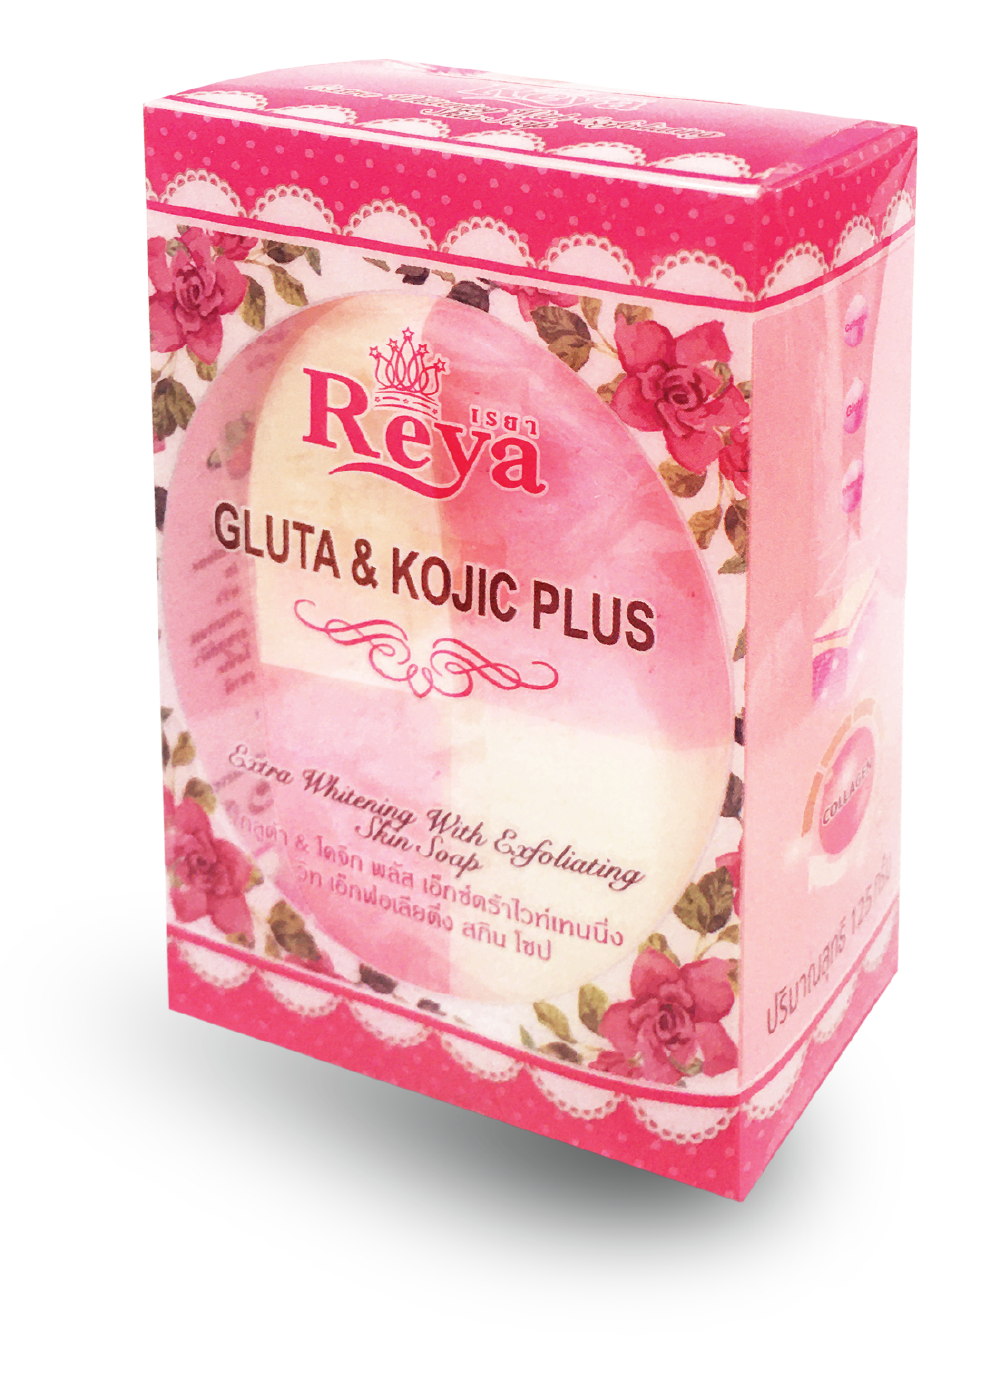 Reya Soap in Box Packaging 125 grams